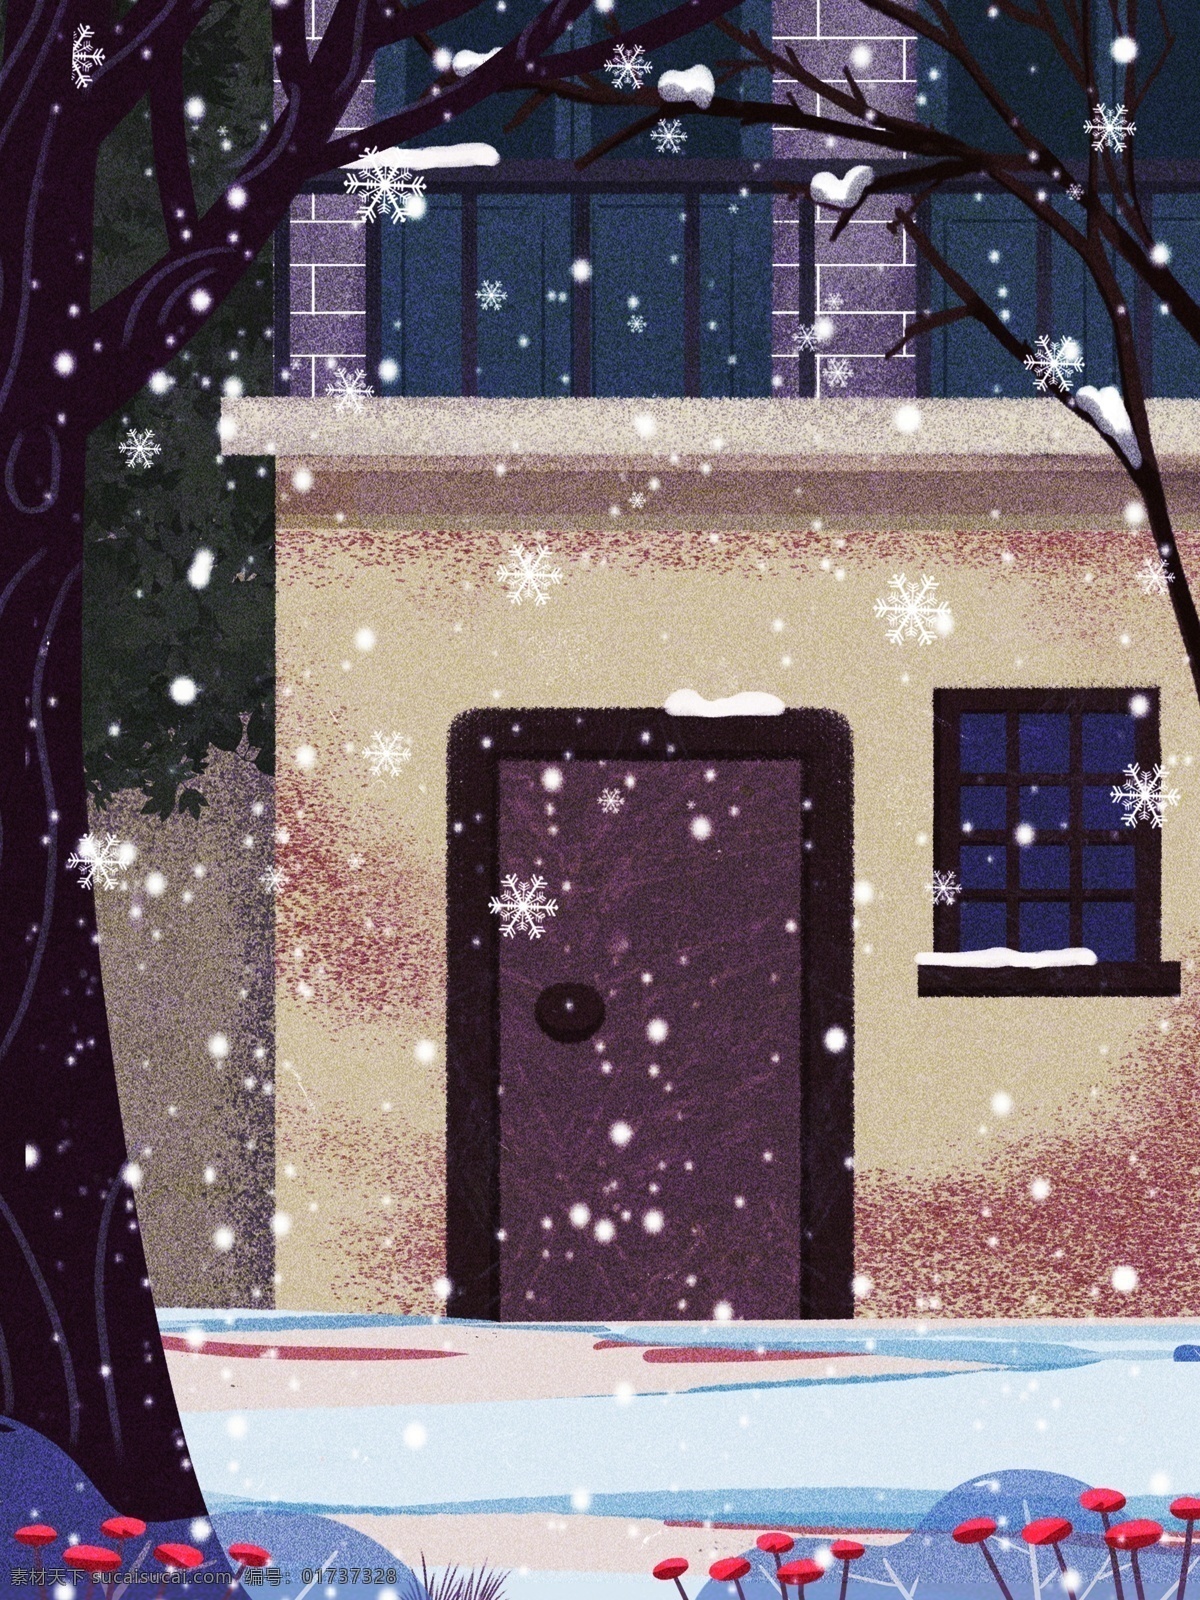 简约 冬季 雪地 房子 背景 建筑 背景图 创意 下雪 冬天 大树 广告背景 彩绘背景 背景展板 促销背景 背景展板图